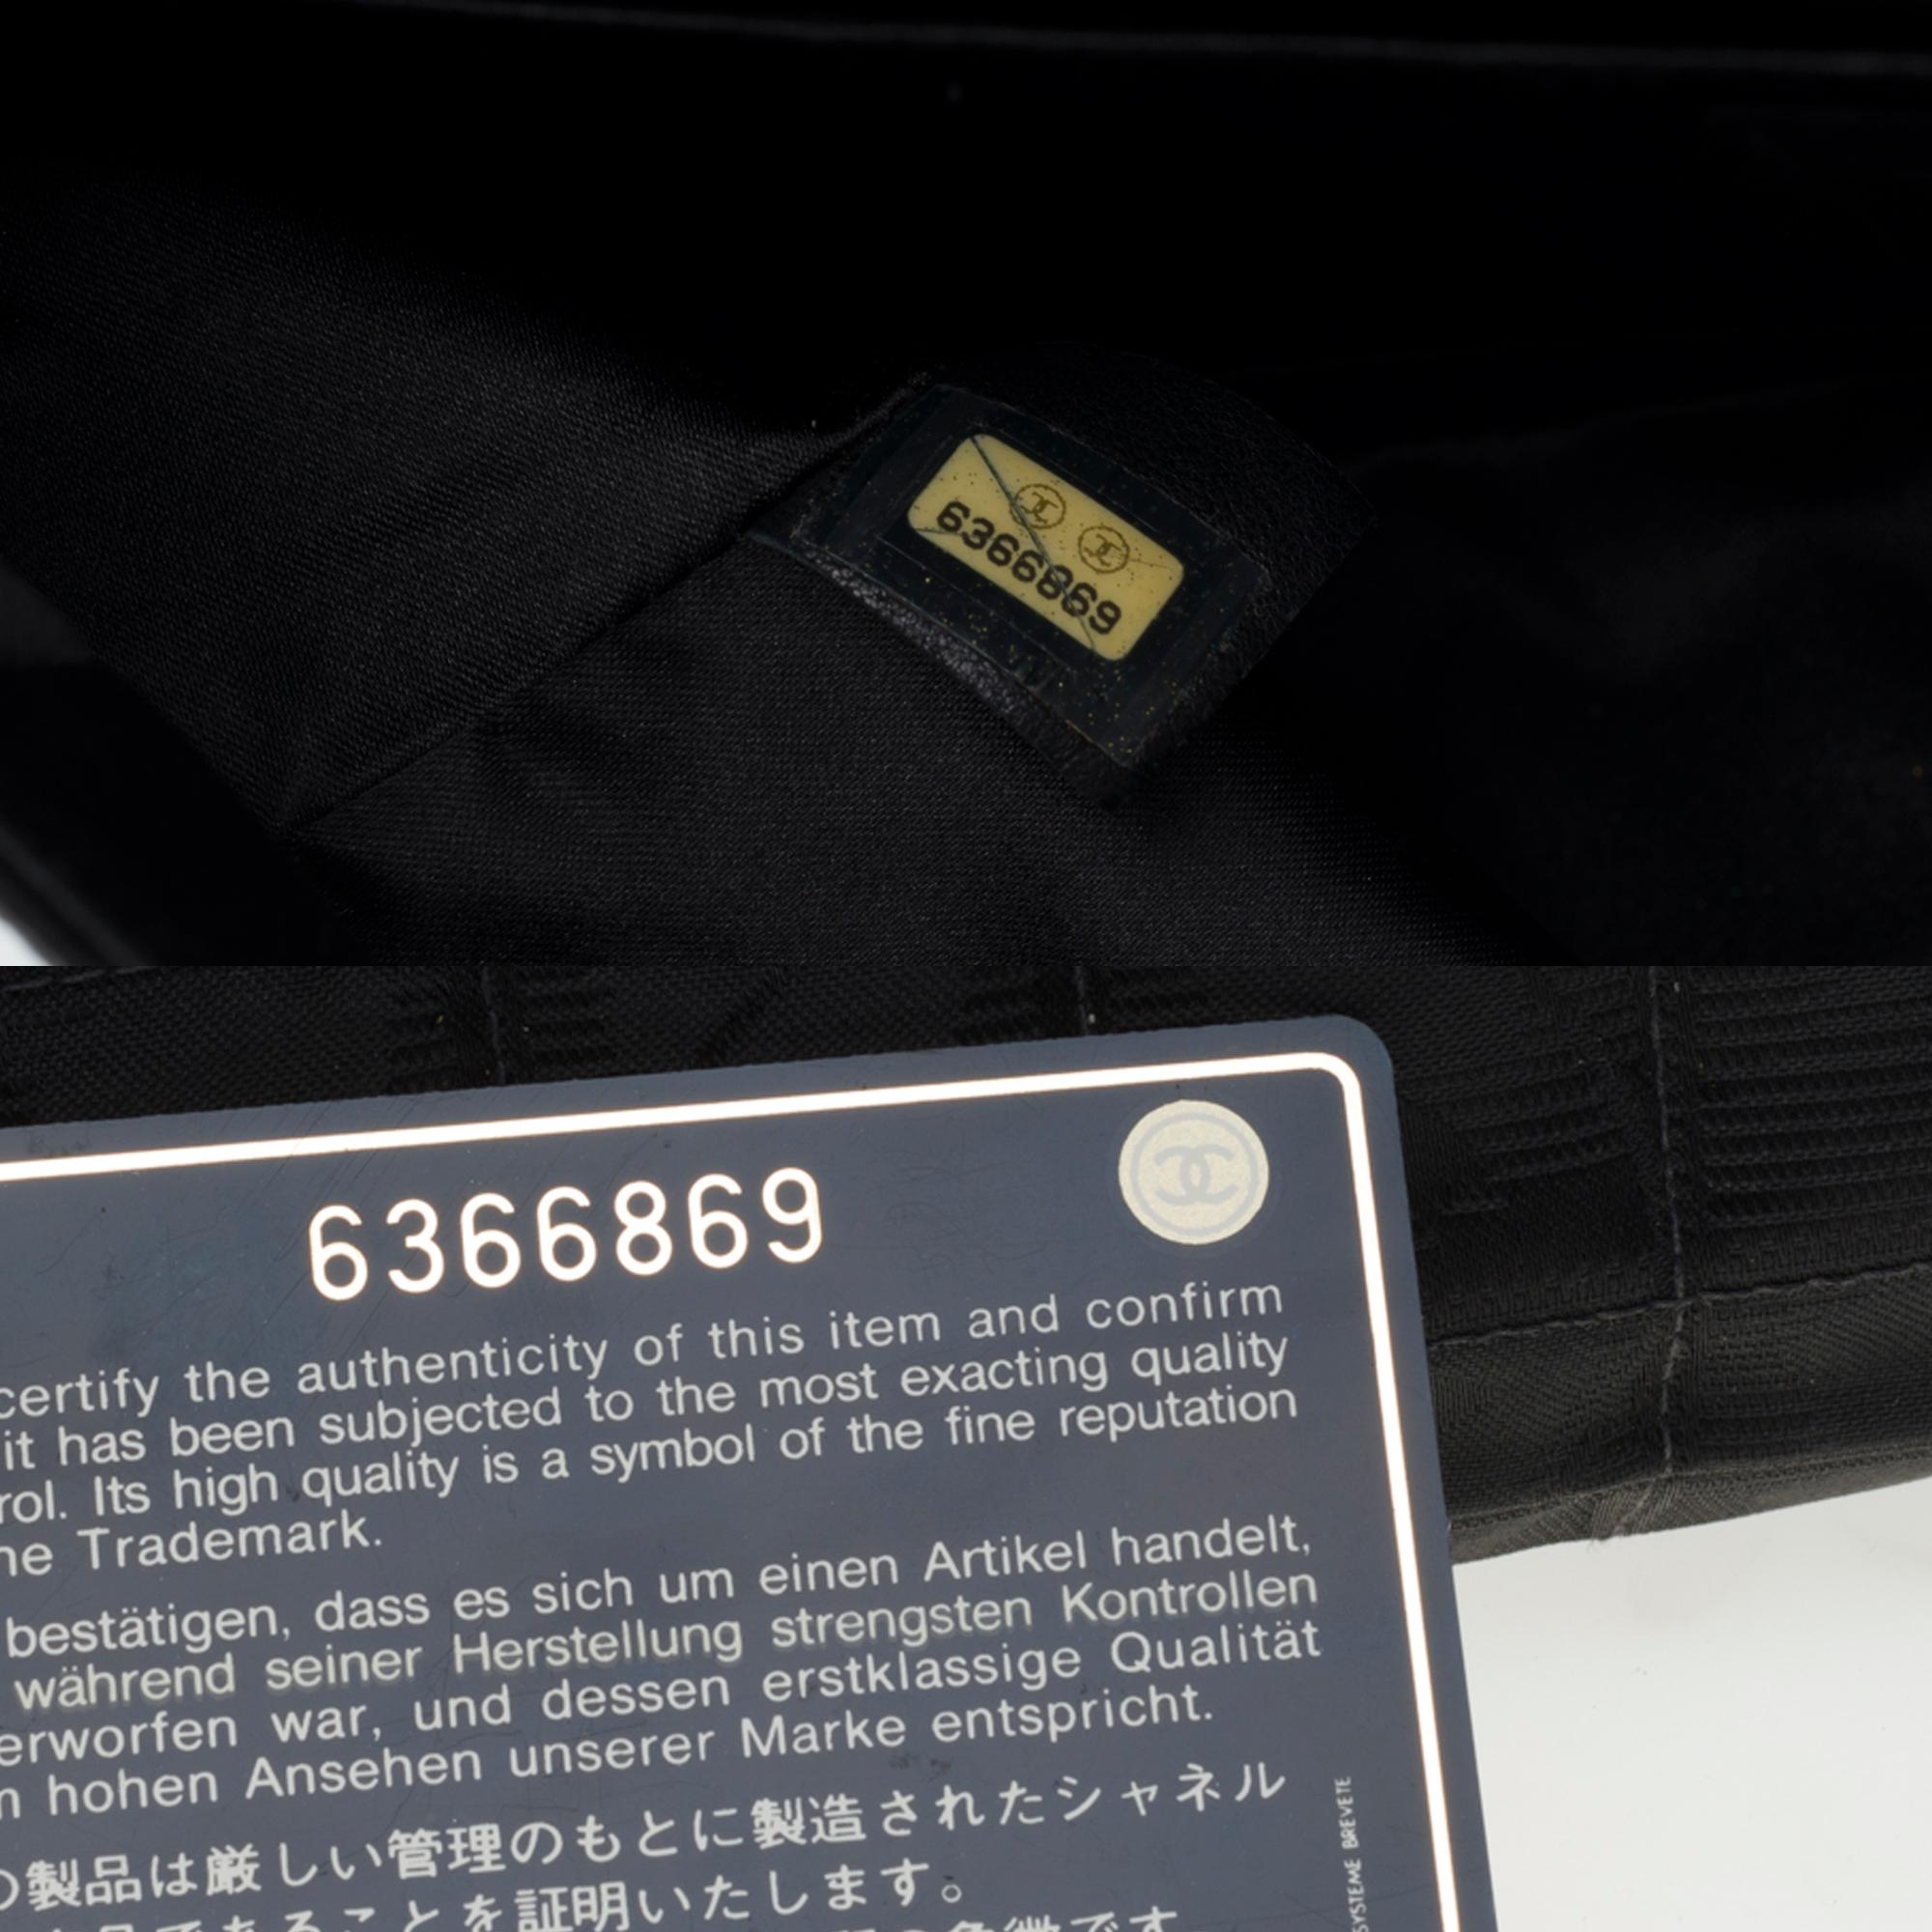 Women's Chanel Timeless/Classic Travel Line flap bag in black nylon, black hardware